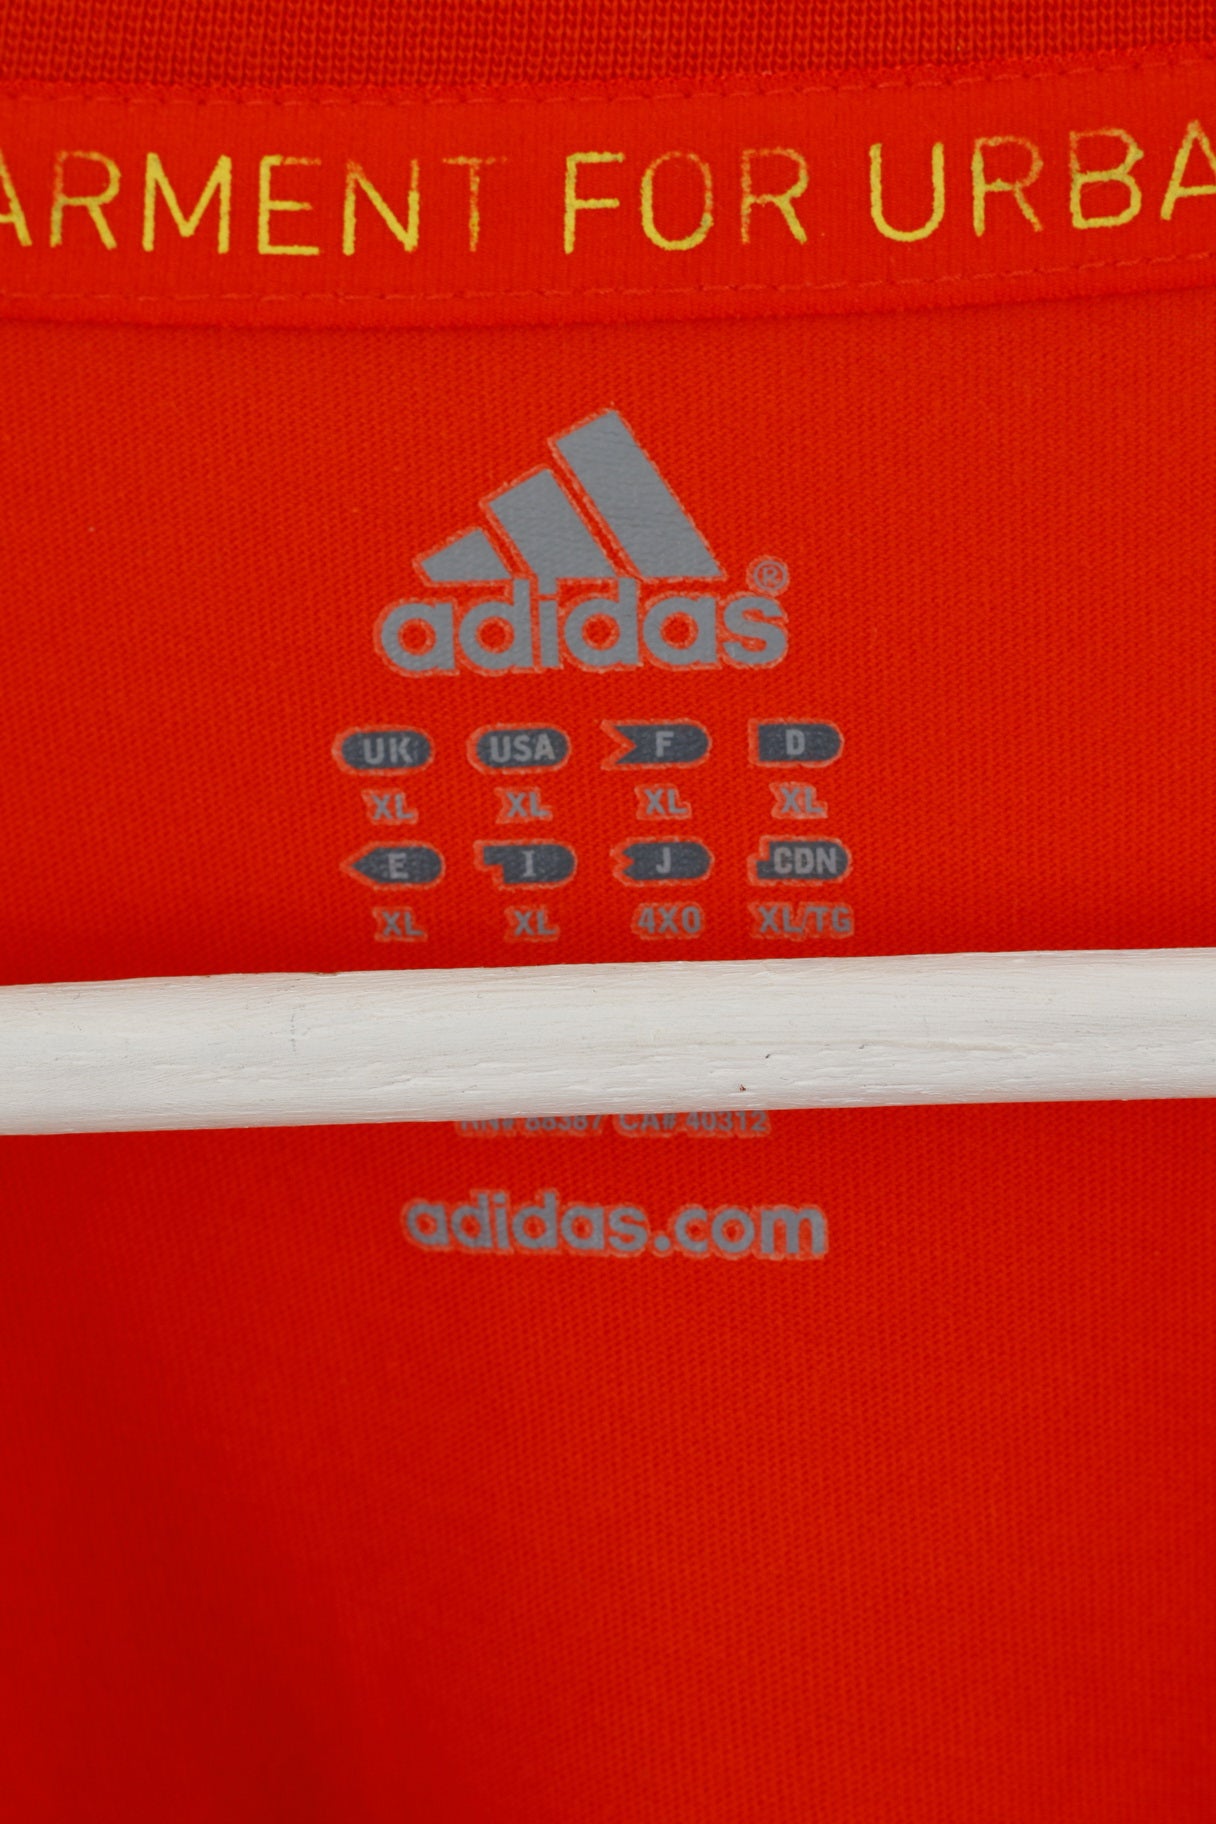 T-shirt Adidas XL da uomo arancione 100% cotone Active You Can Run Top